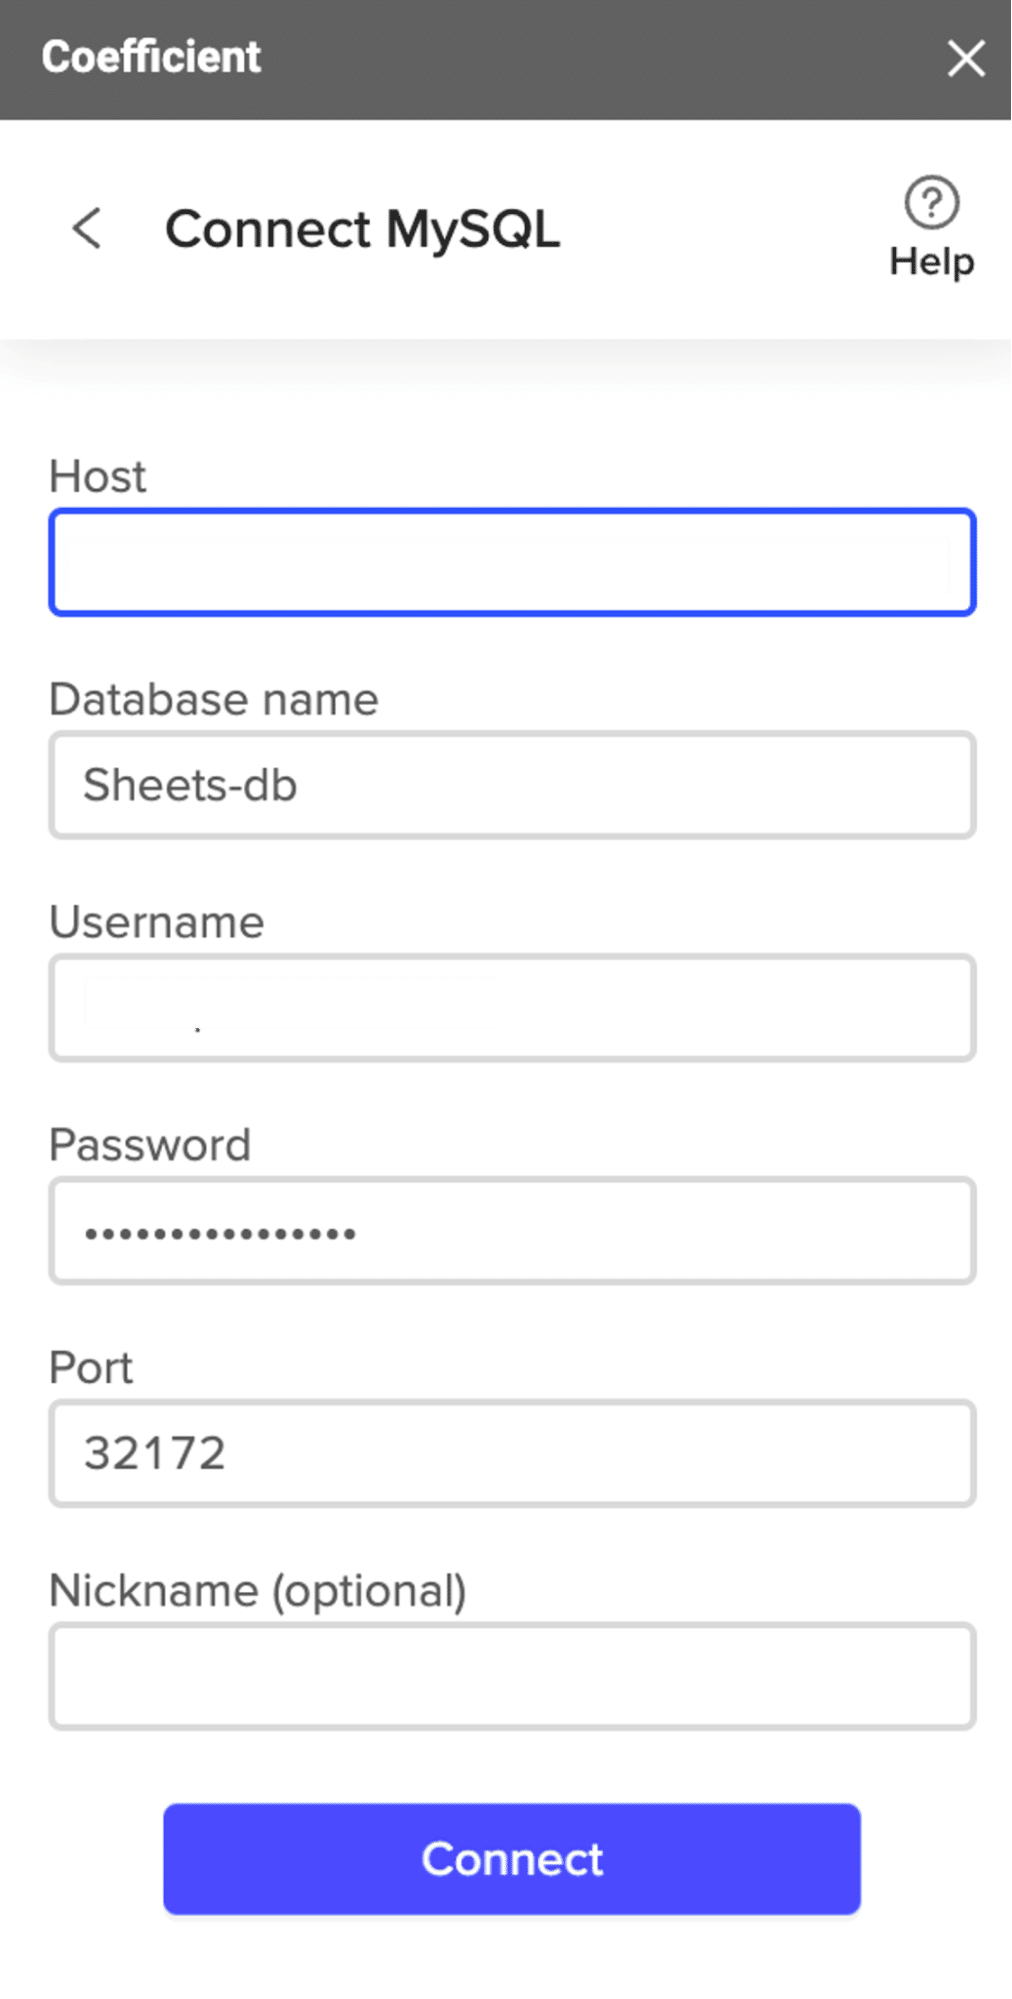 Coefficient mostra i campi Host, Nome del database, Nome utente, Password, Porta e Nickname necessari per connettersi a MariaDB..